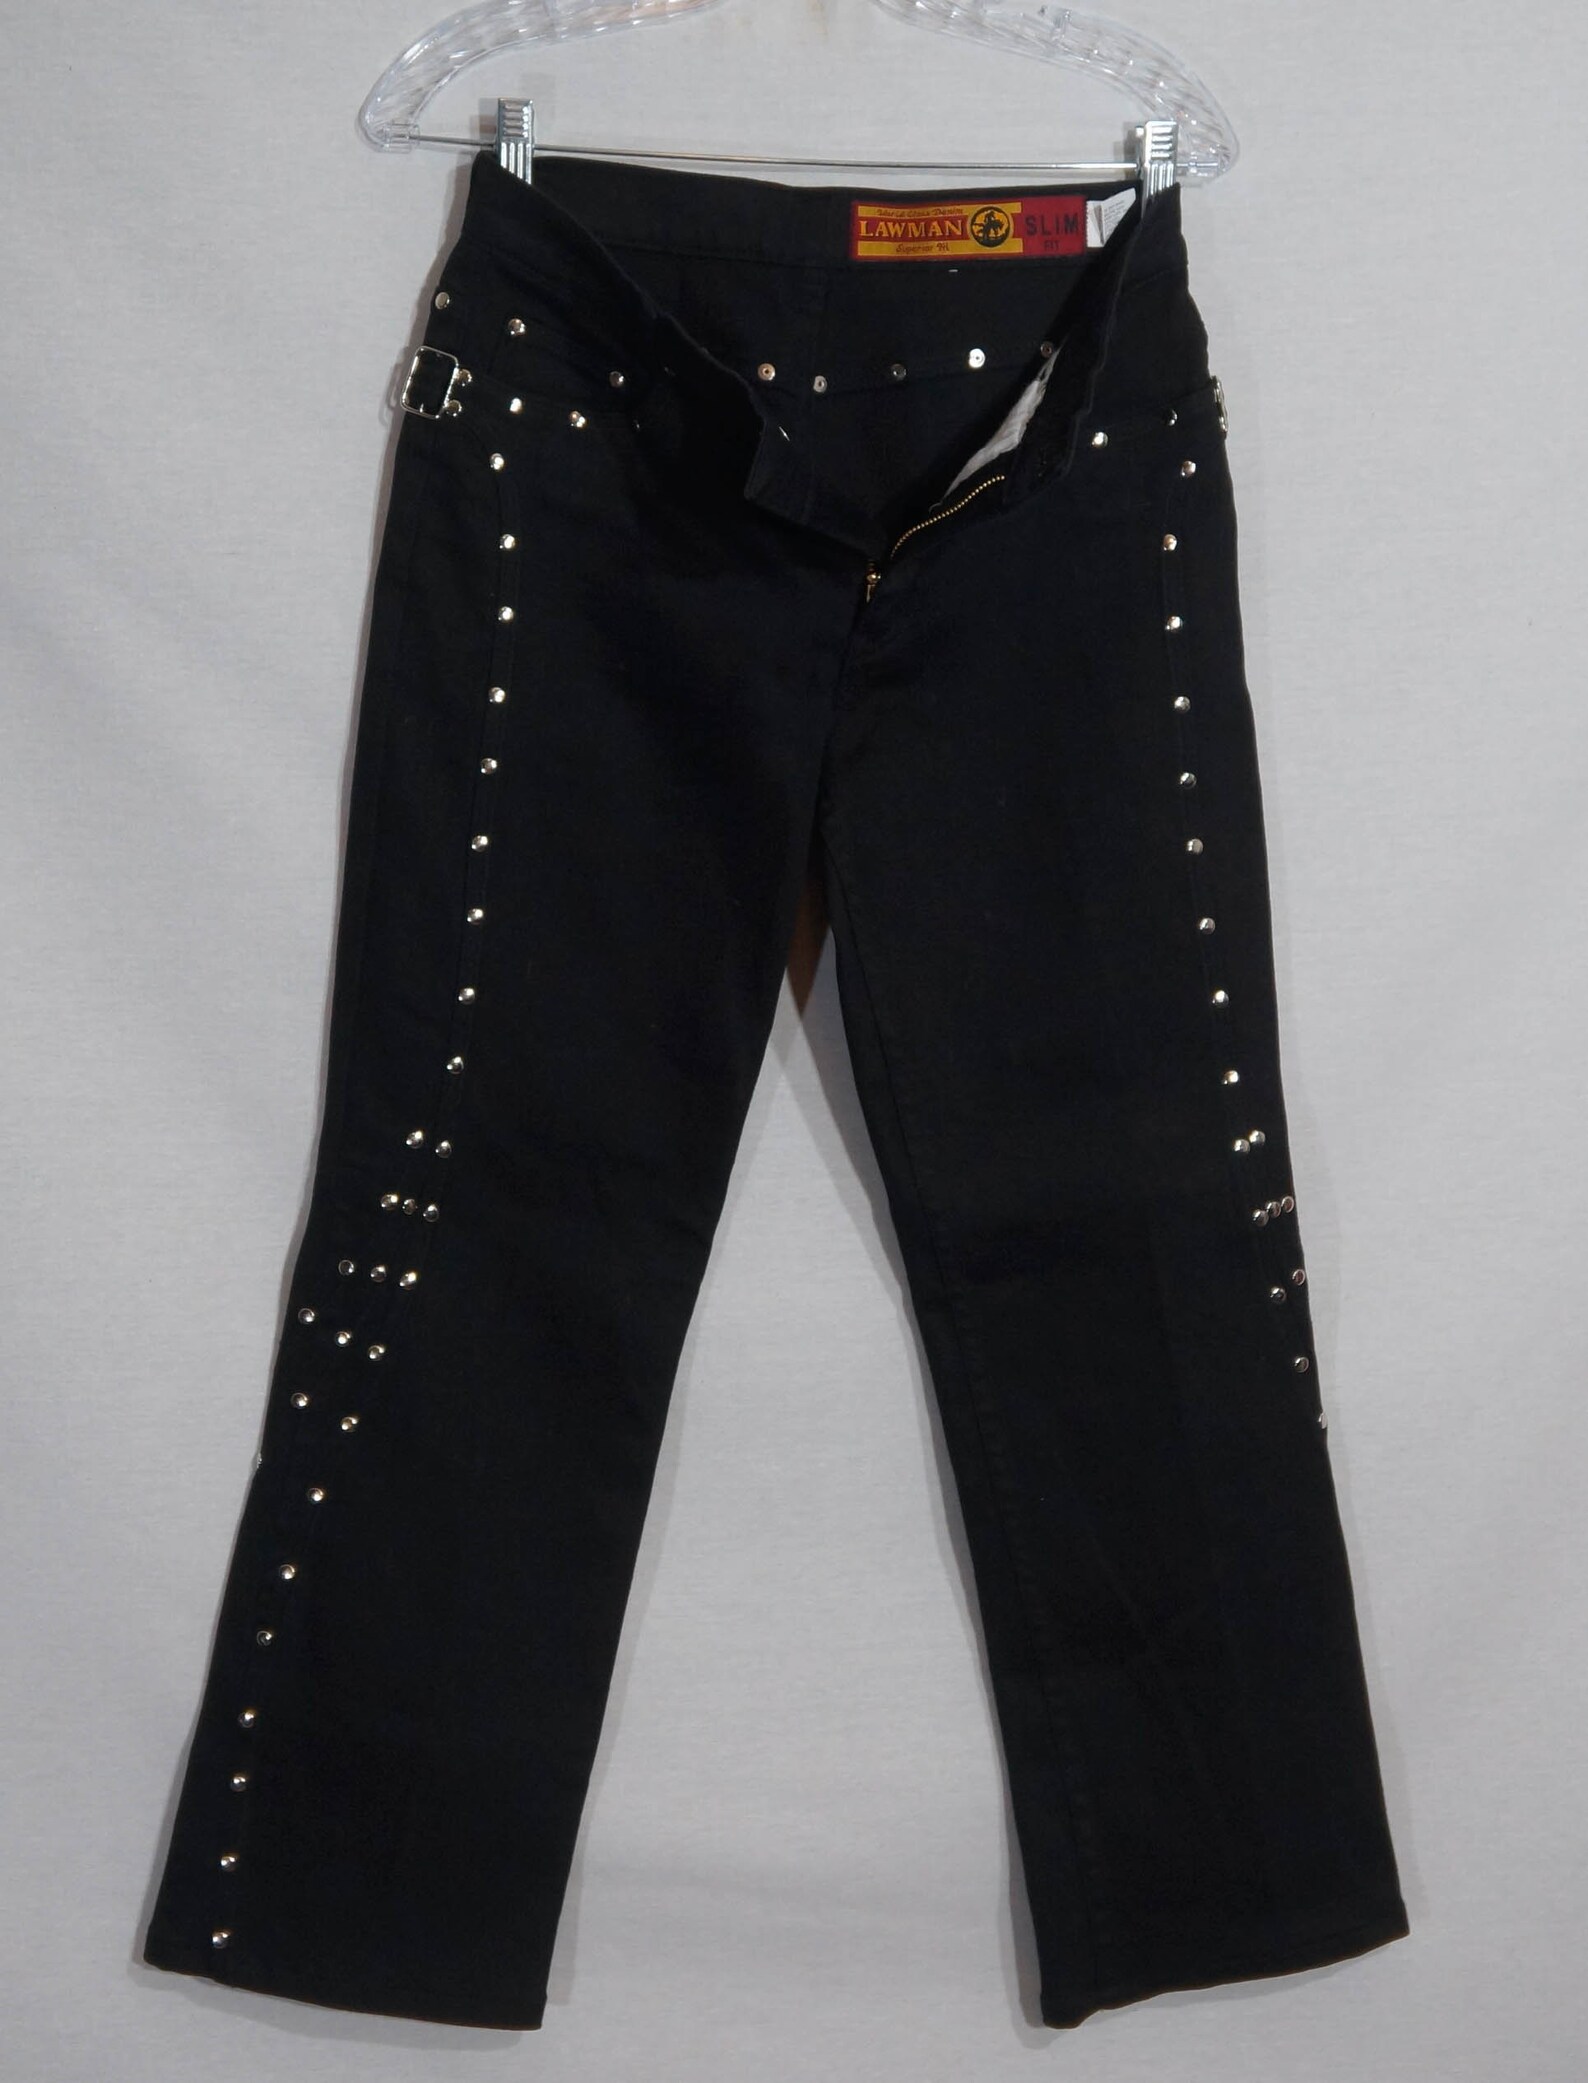 Vintage Lawman Jeans 90s Western Black Denim Rodeo Show Pants - Etsy